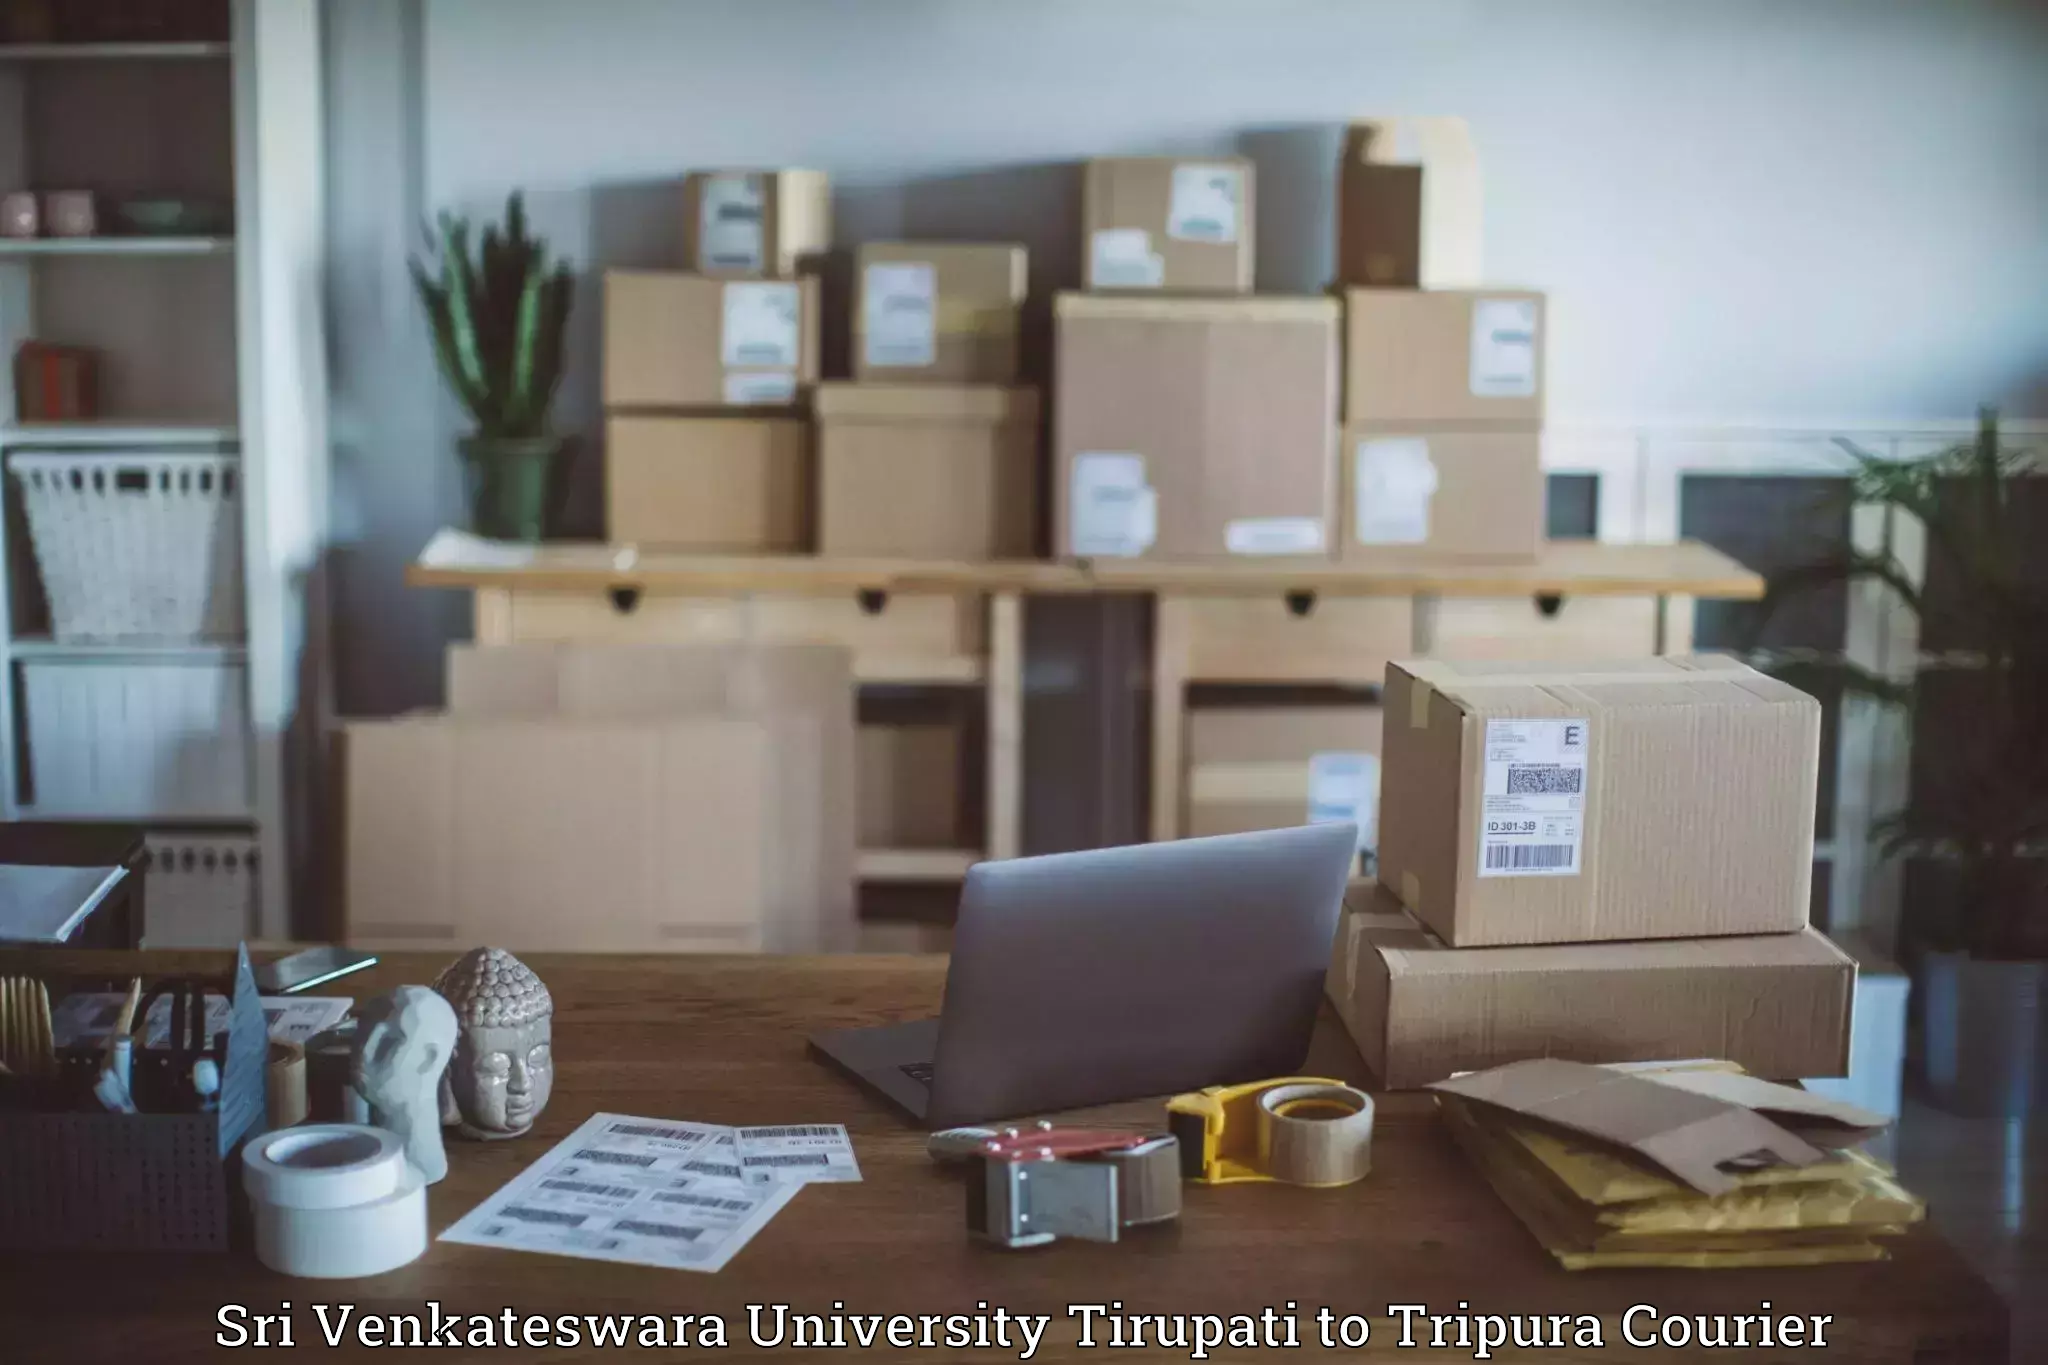 Express logistics providers Sri Venkateswara University Tirupati to West Tripura